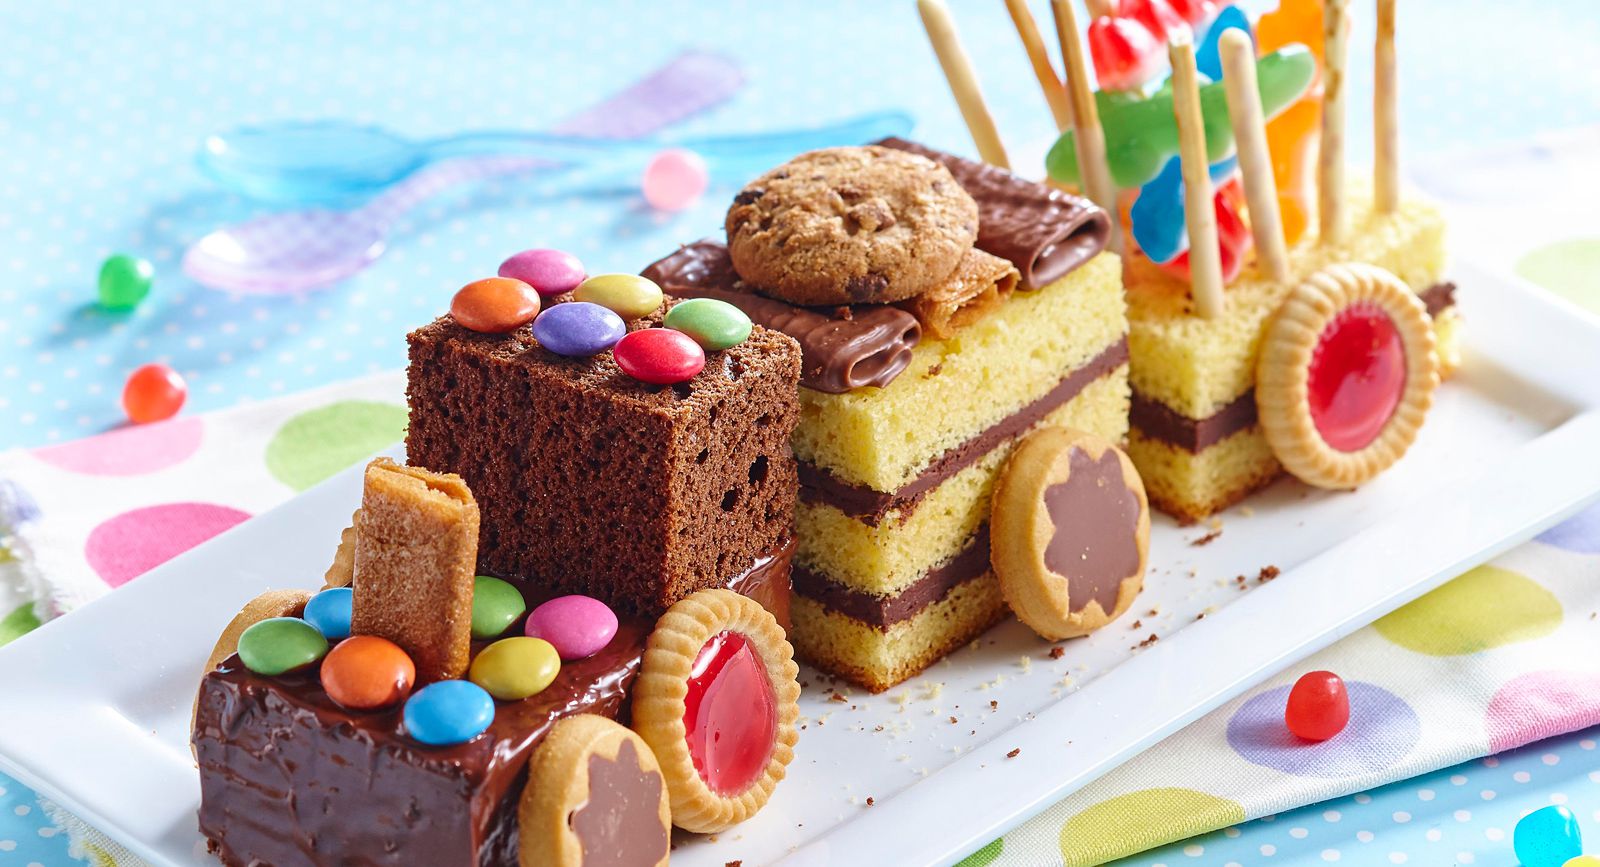 Gâteau d'anniversaire pour les enfants - Recette